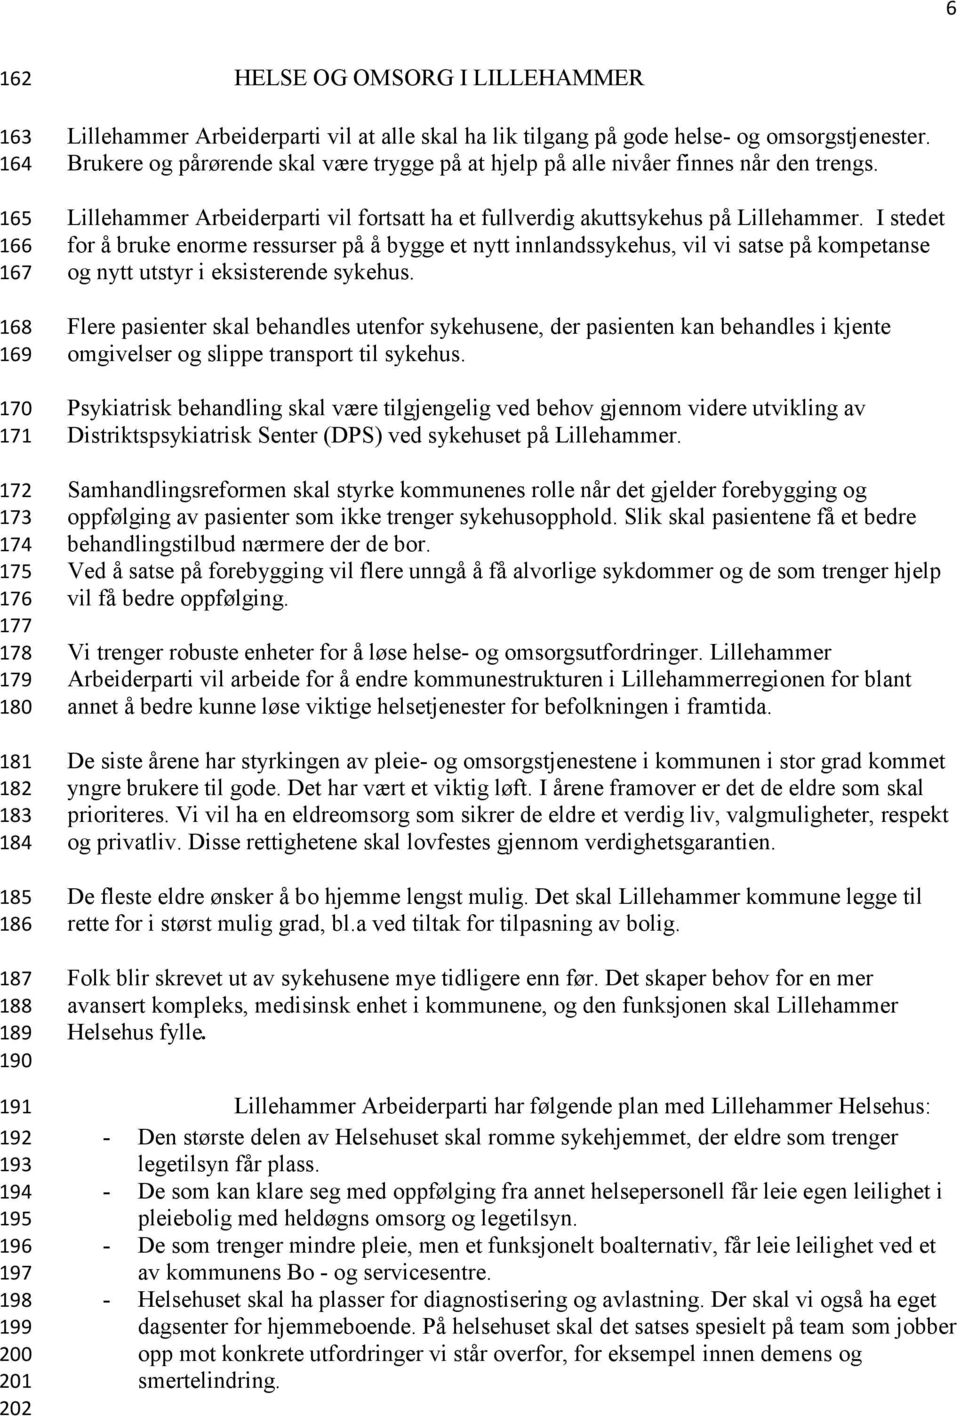 Lillehammer Arbeiderparti vil fortsatt ha et fullverdig akuttsykehus på Lillehammer.